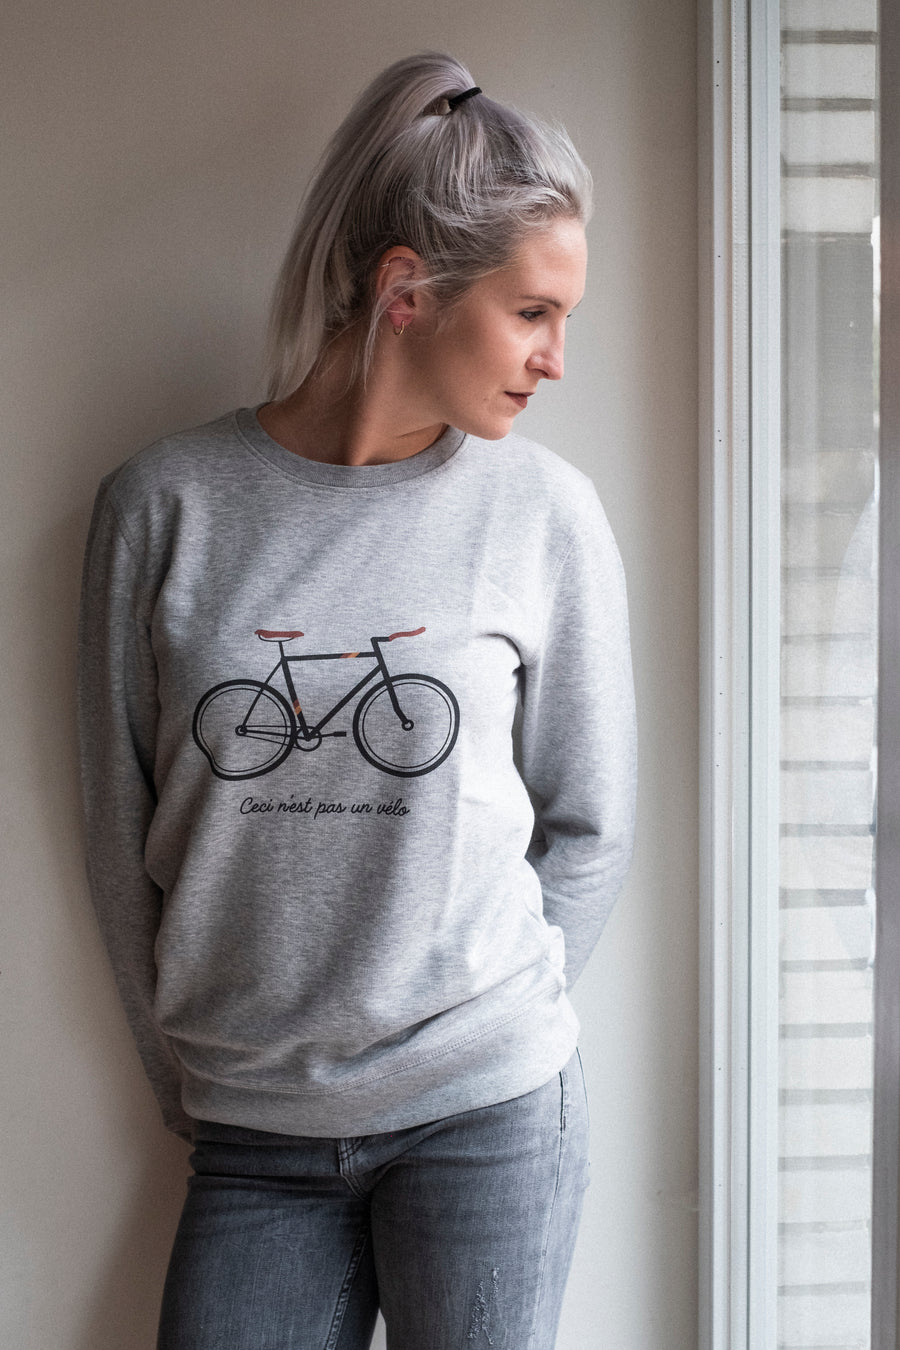 Ceci n'est pas un vélo Sweater - Joh Clothing